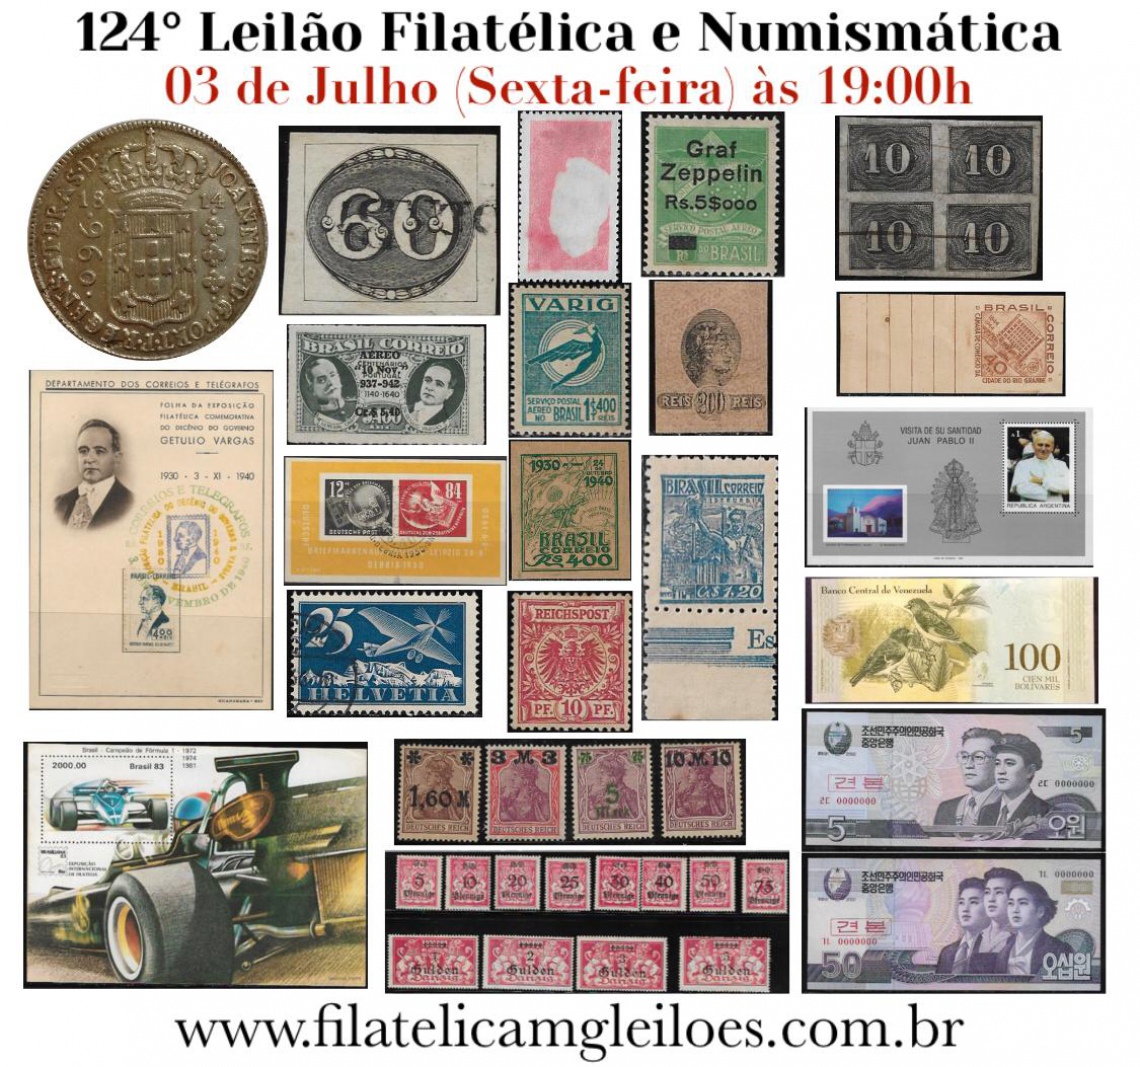 124º Leilão de Filatelia e Numismática